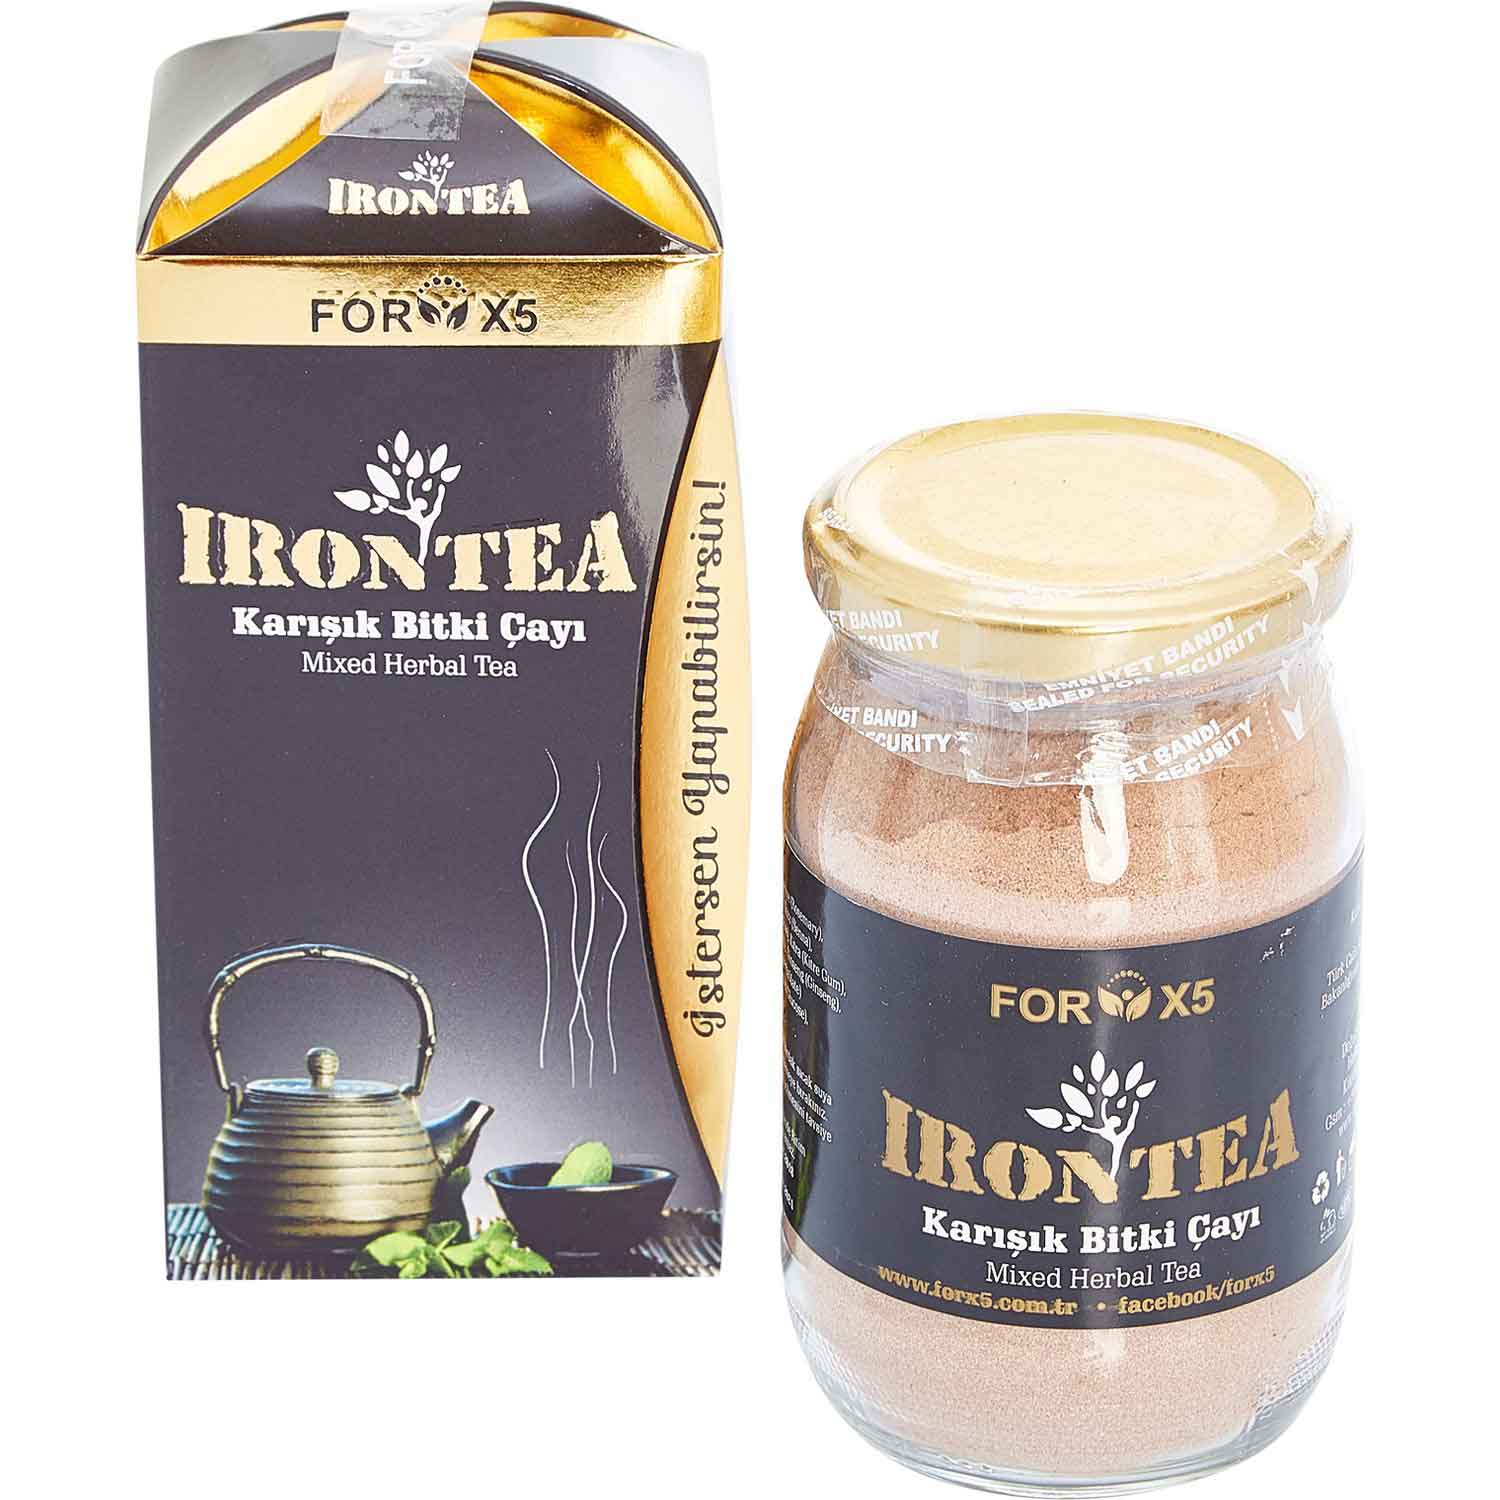 Forx5 Iron Tea Karışık Bitki Çayı Kullanıcı Yorumları